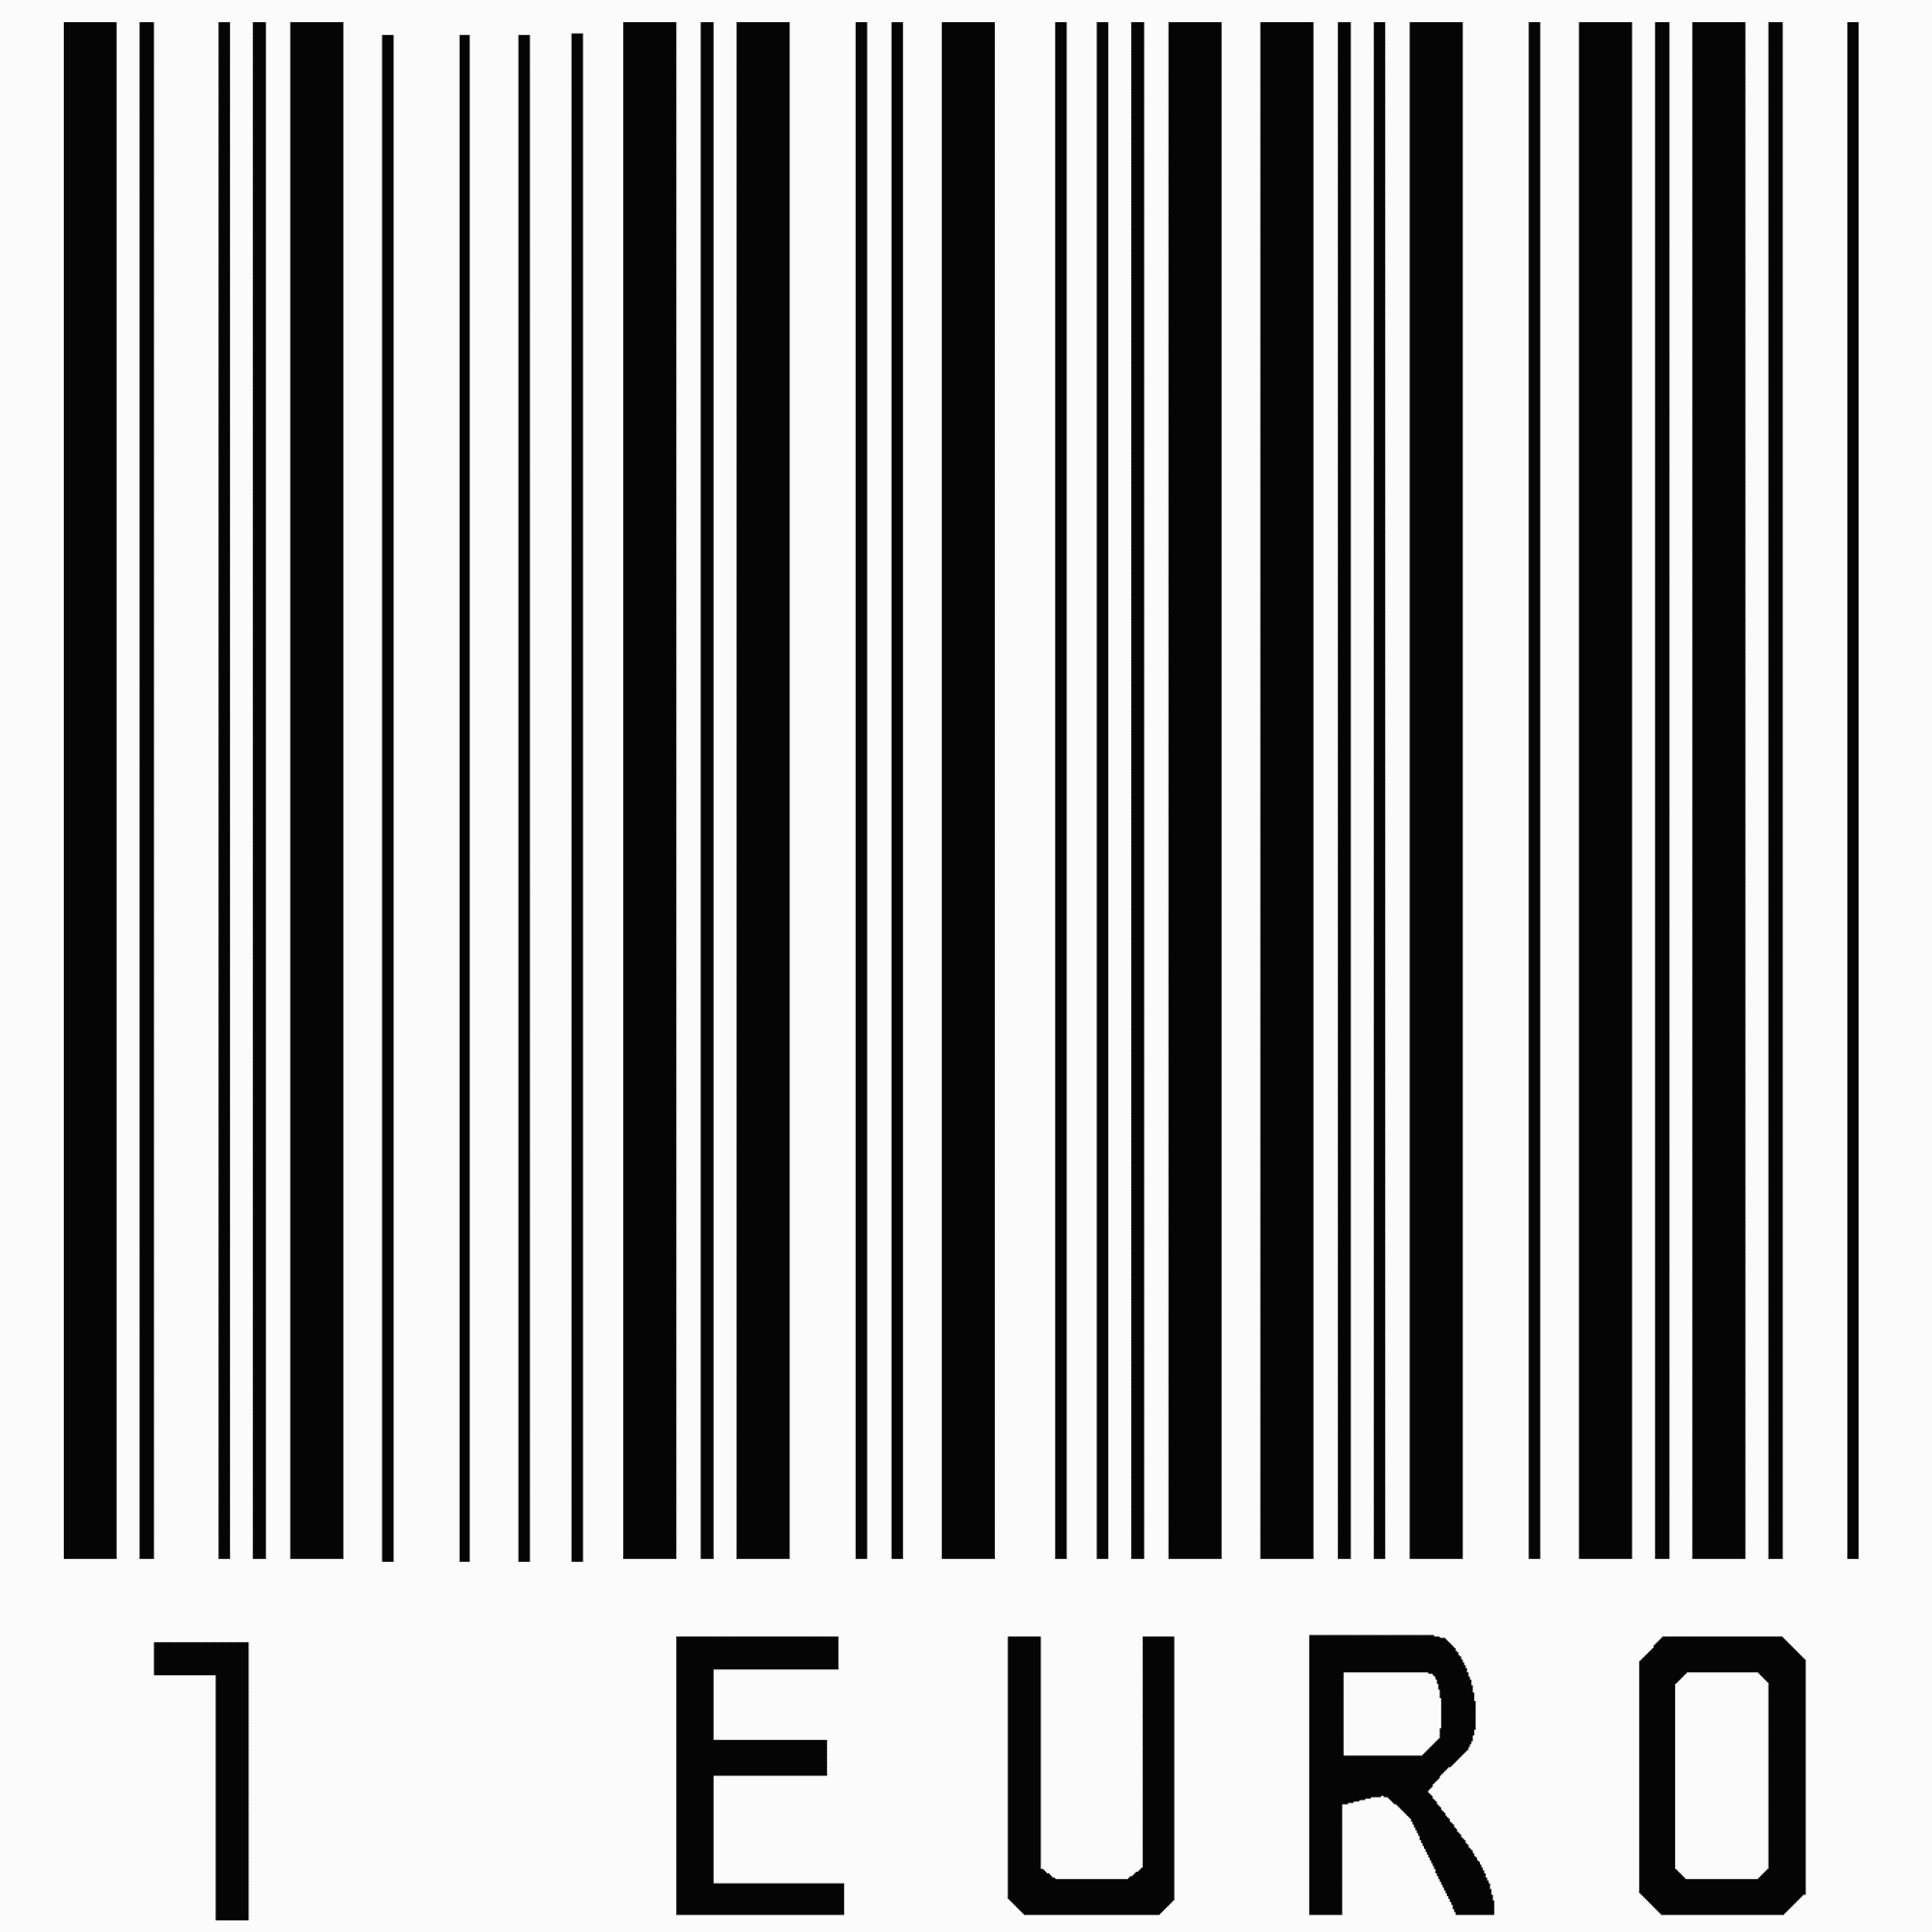 1 Euro Barcode Angebot Download Herunterladen Downloaden Kostenlos Umsonst Gratis Bilder Grafiken Images Cliparts Fotos Photos